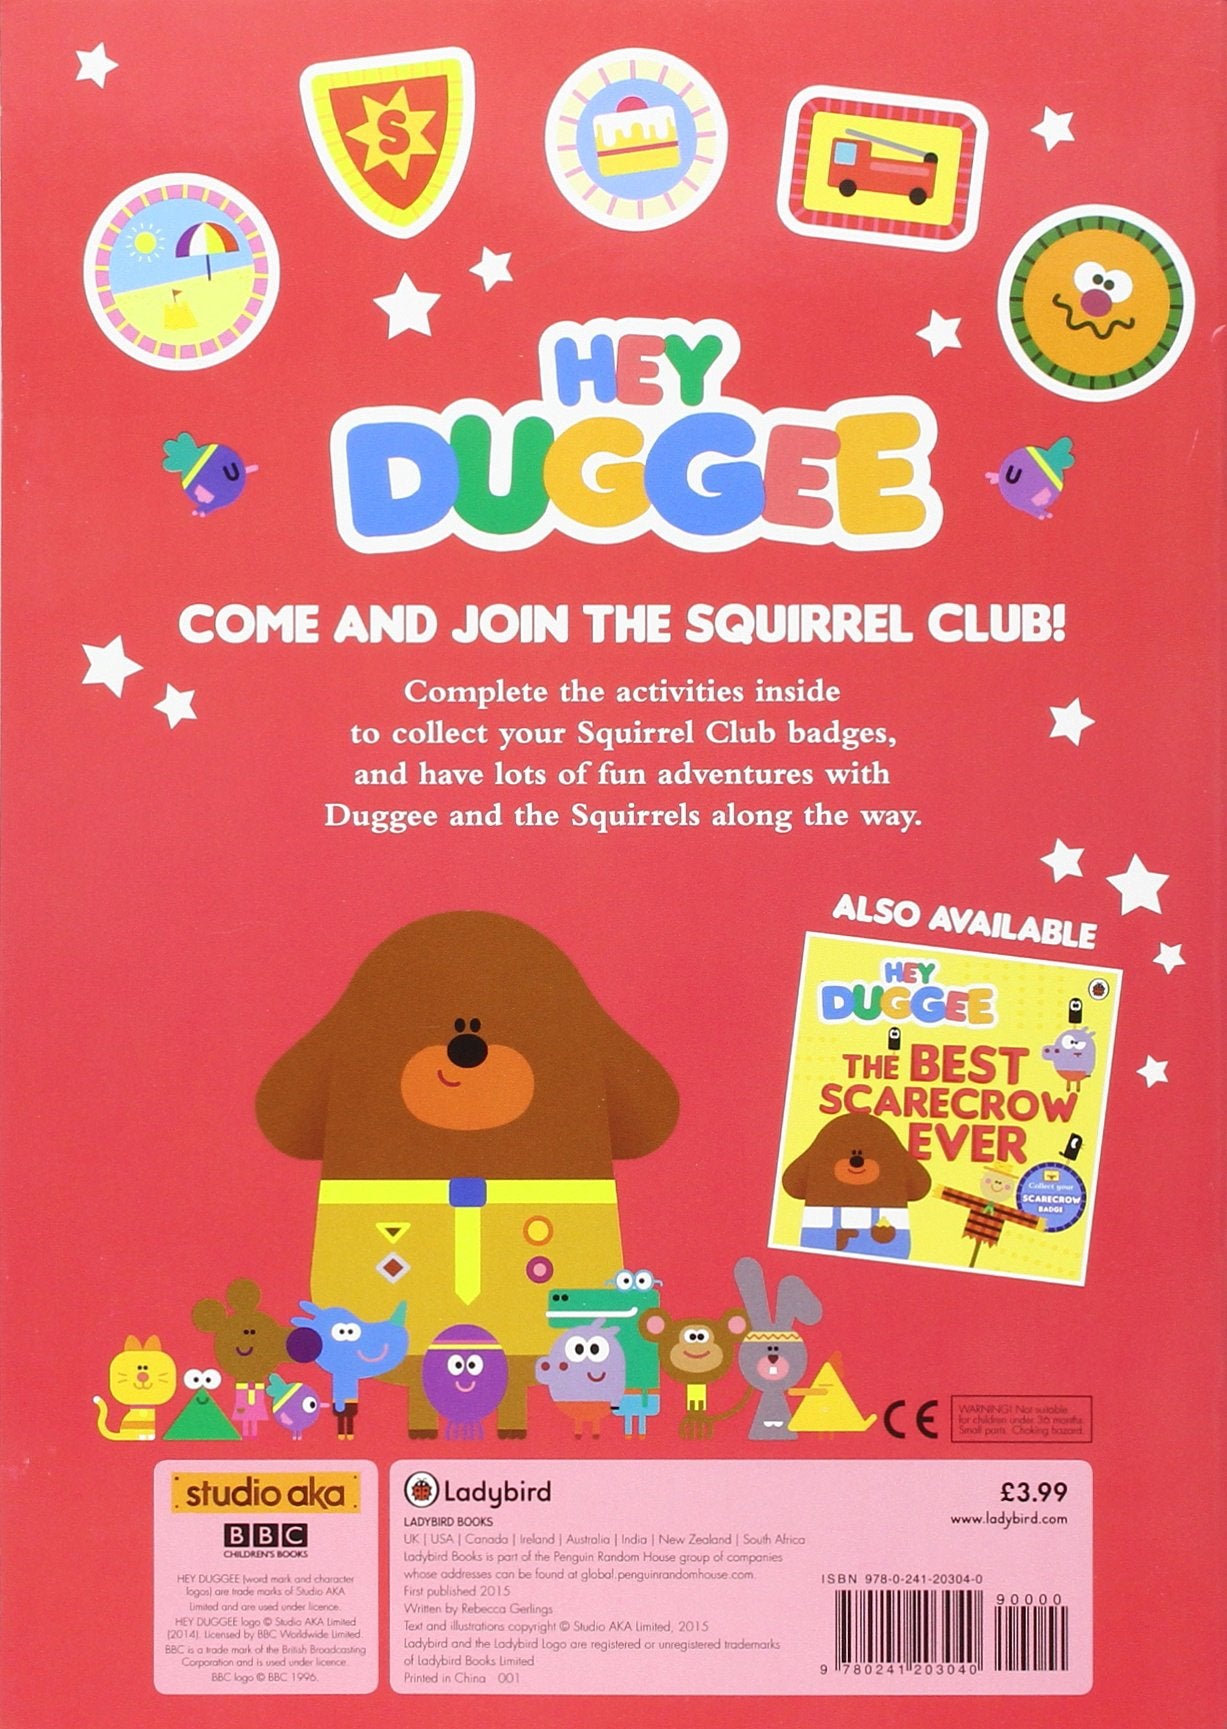 Hey Duggee Squirrel Club Sticker Activity Book